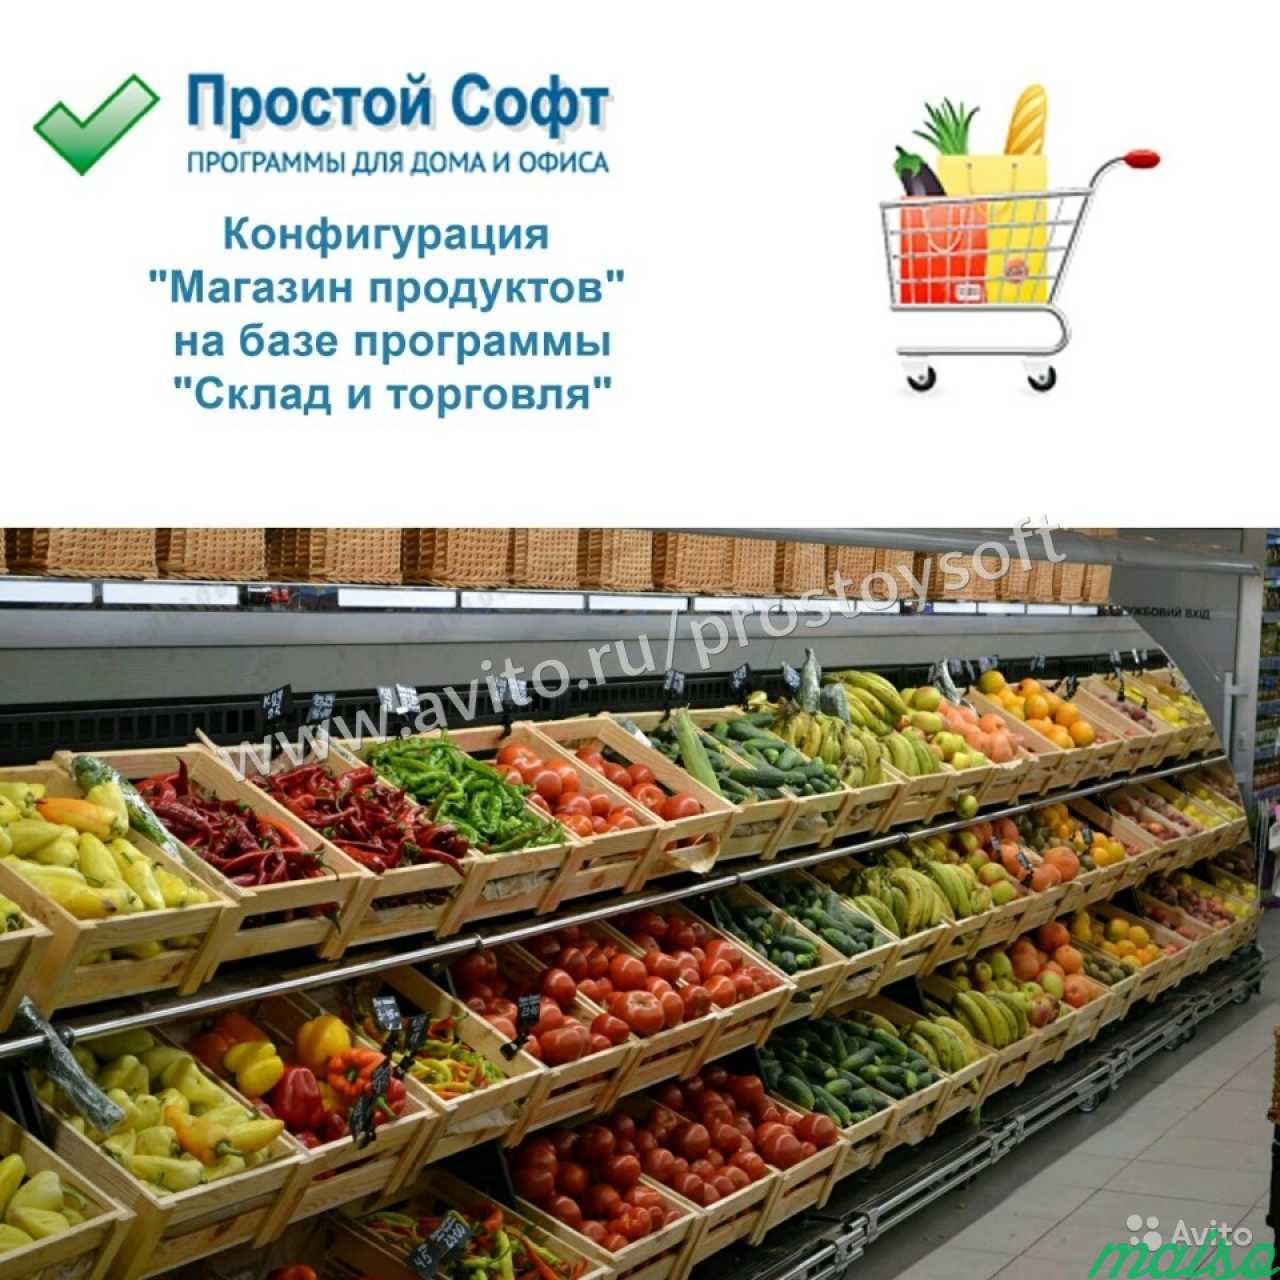 Конфигурация Магазин продуктов в Санкт-Петербурге. Фото 1